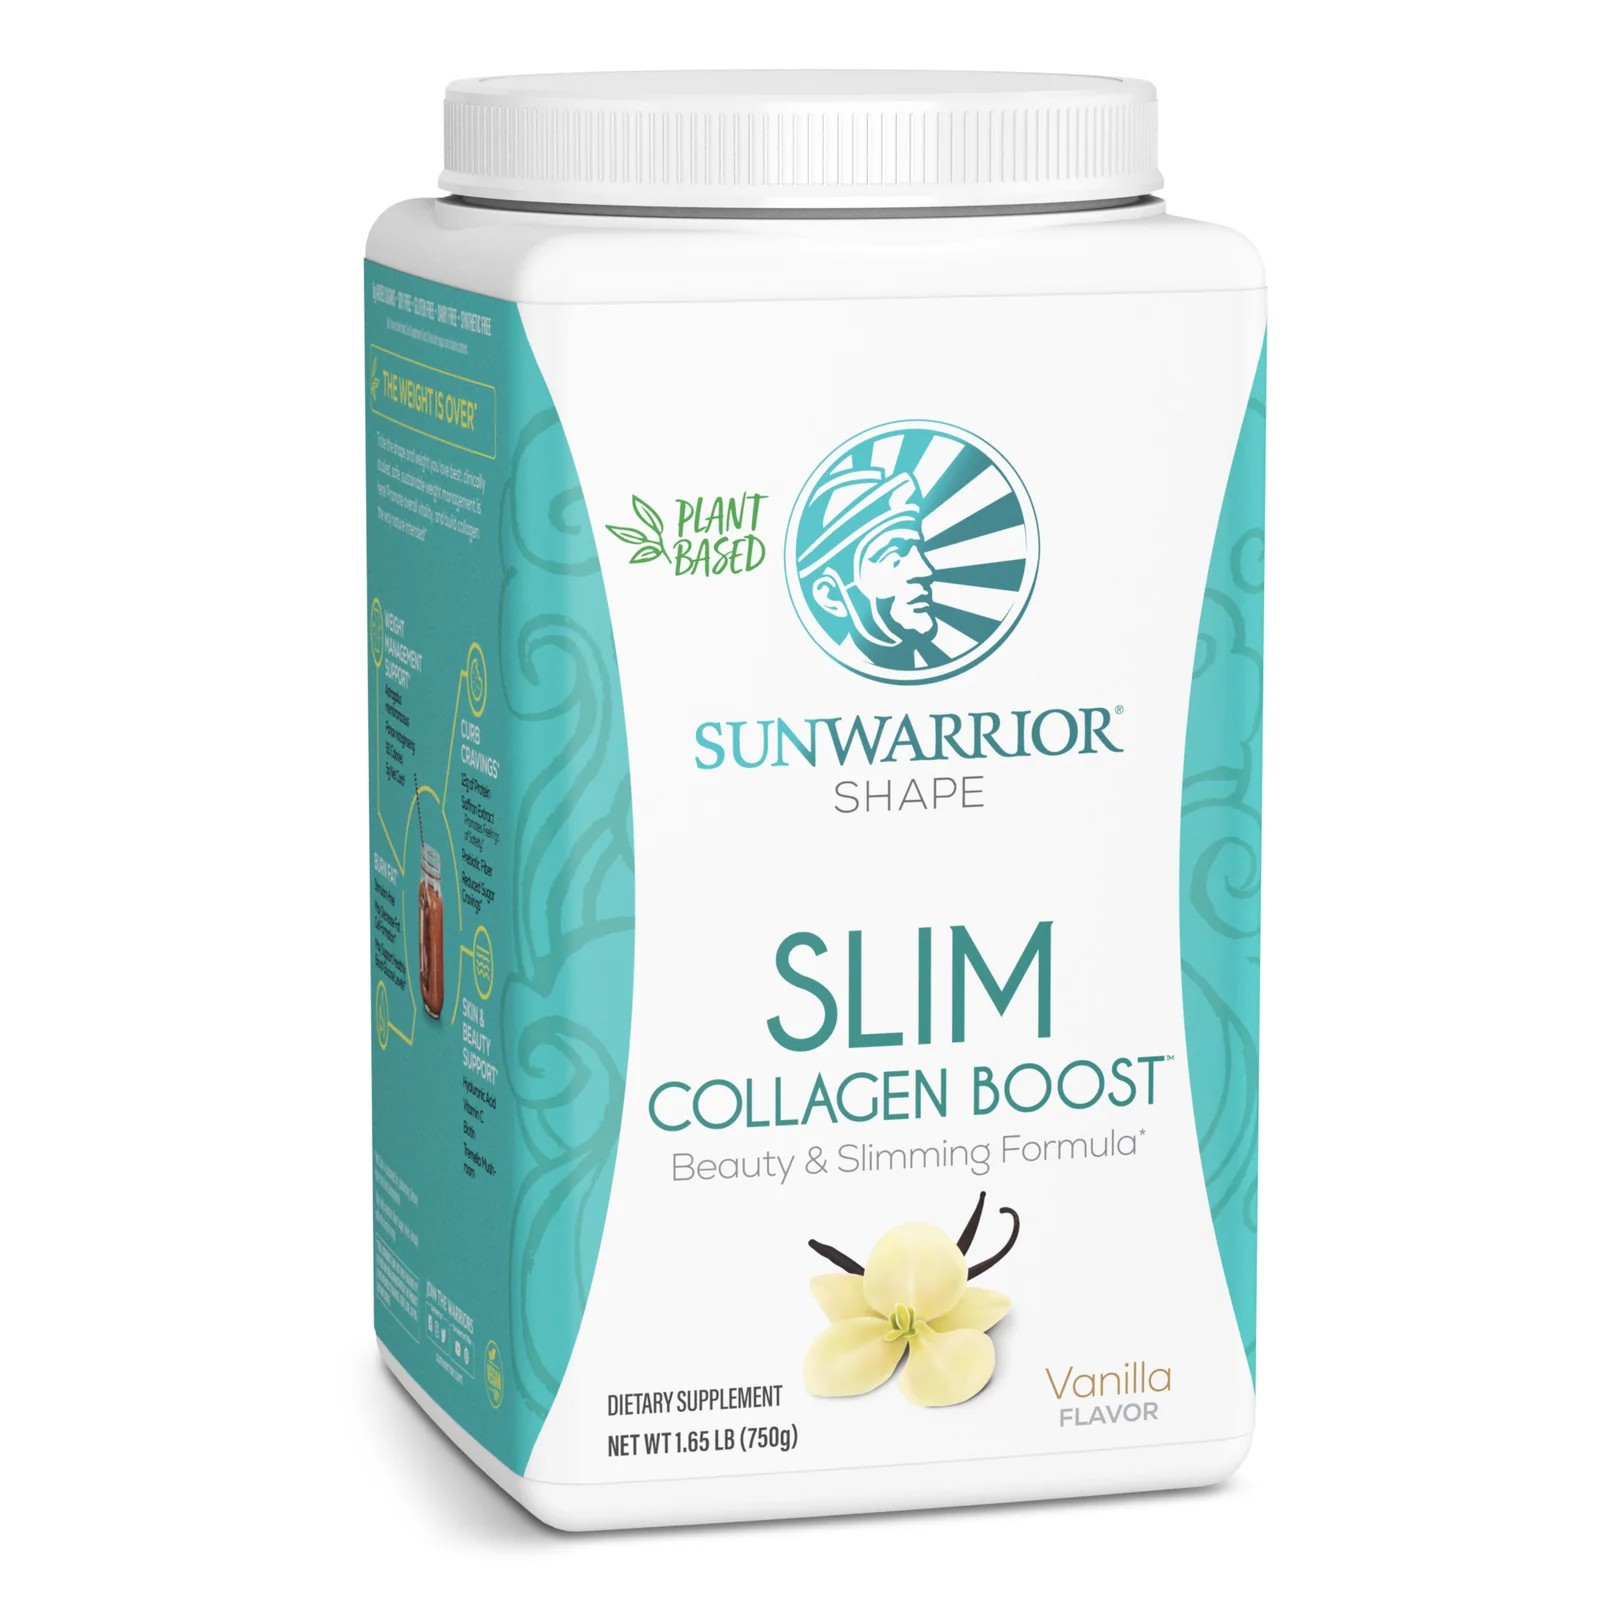 Sunwarrior Slim Collagen Boost 14